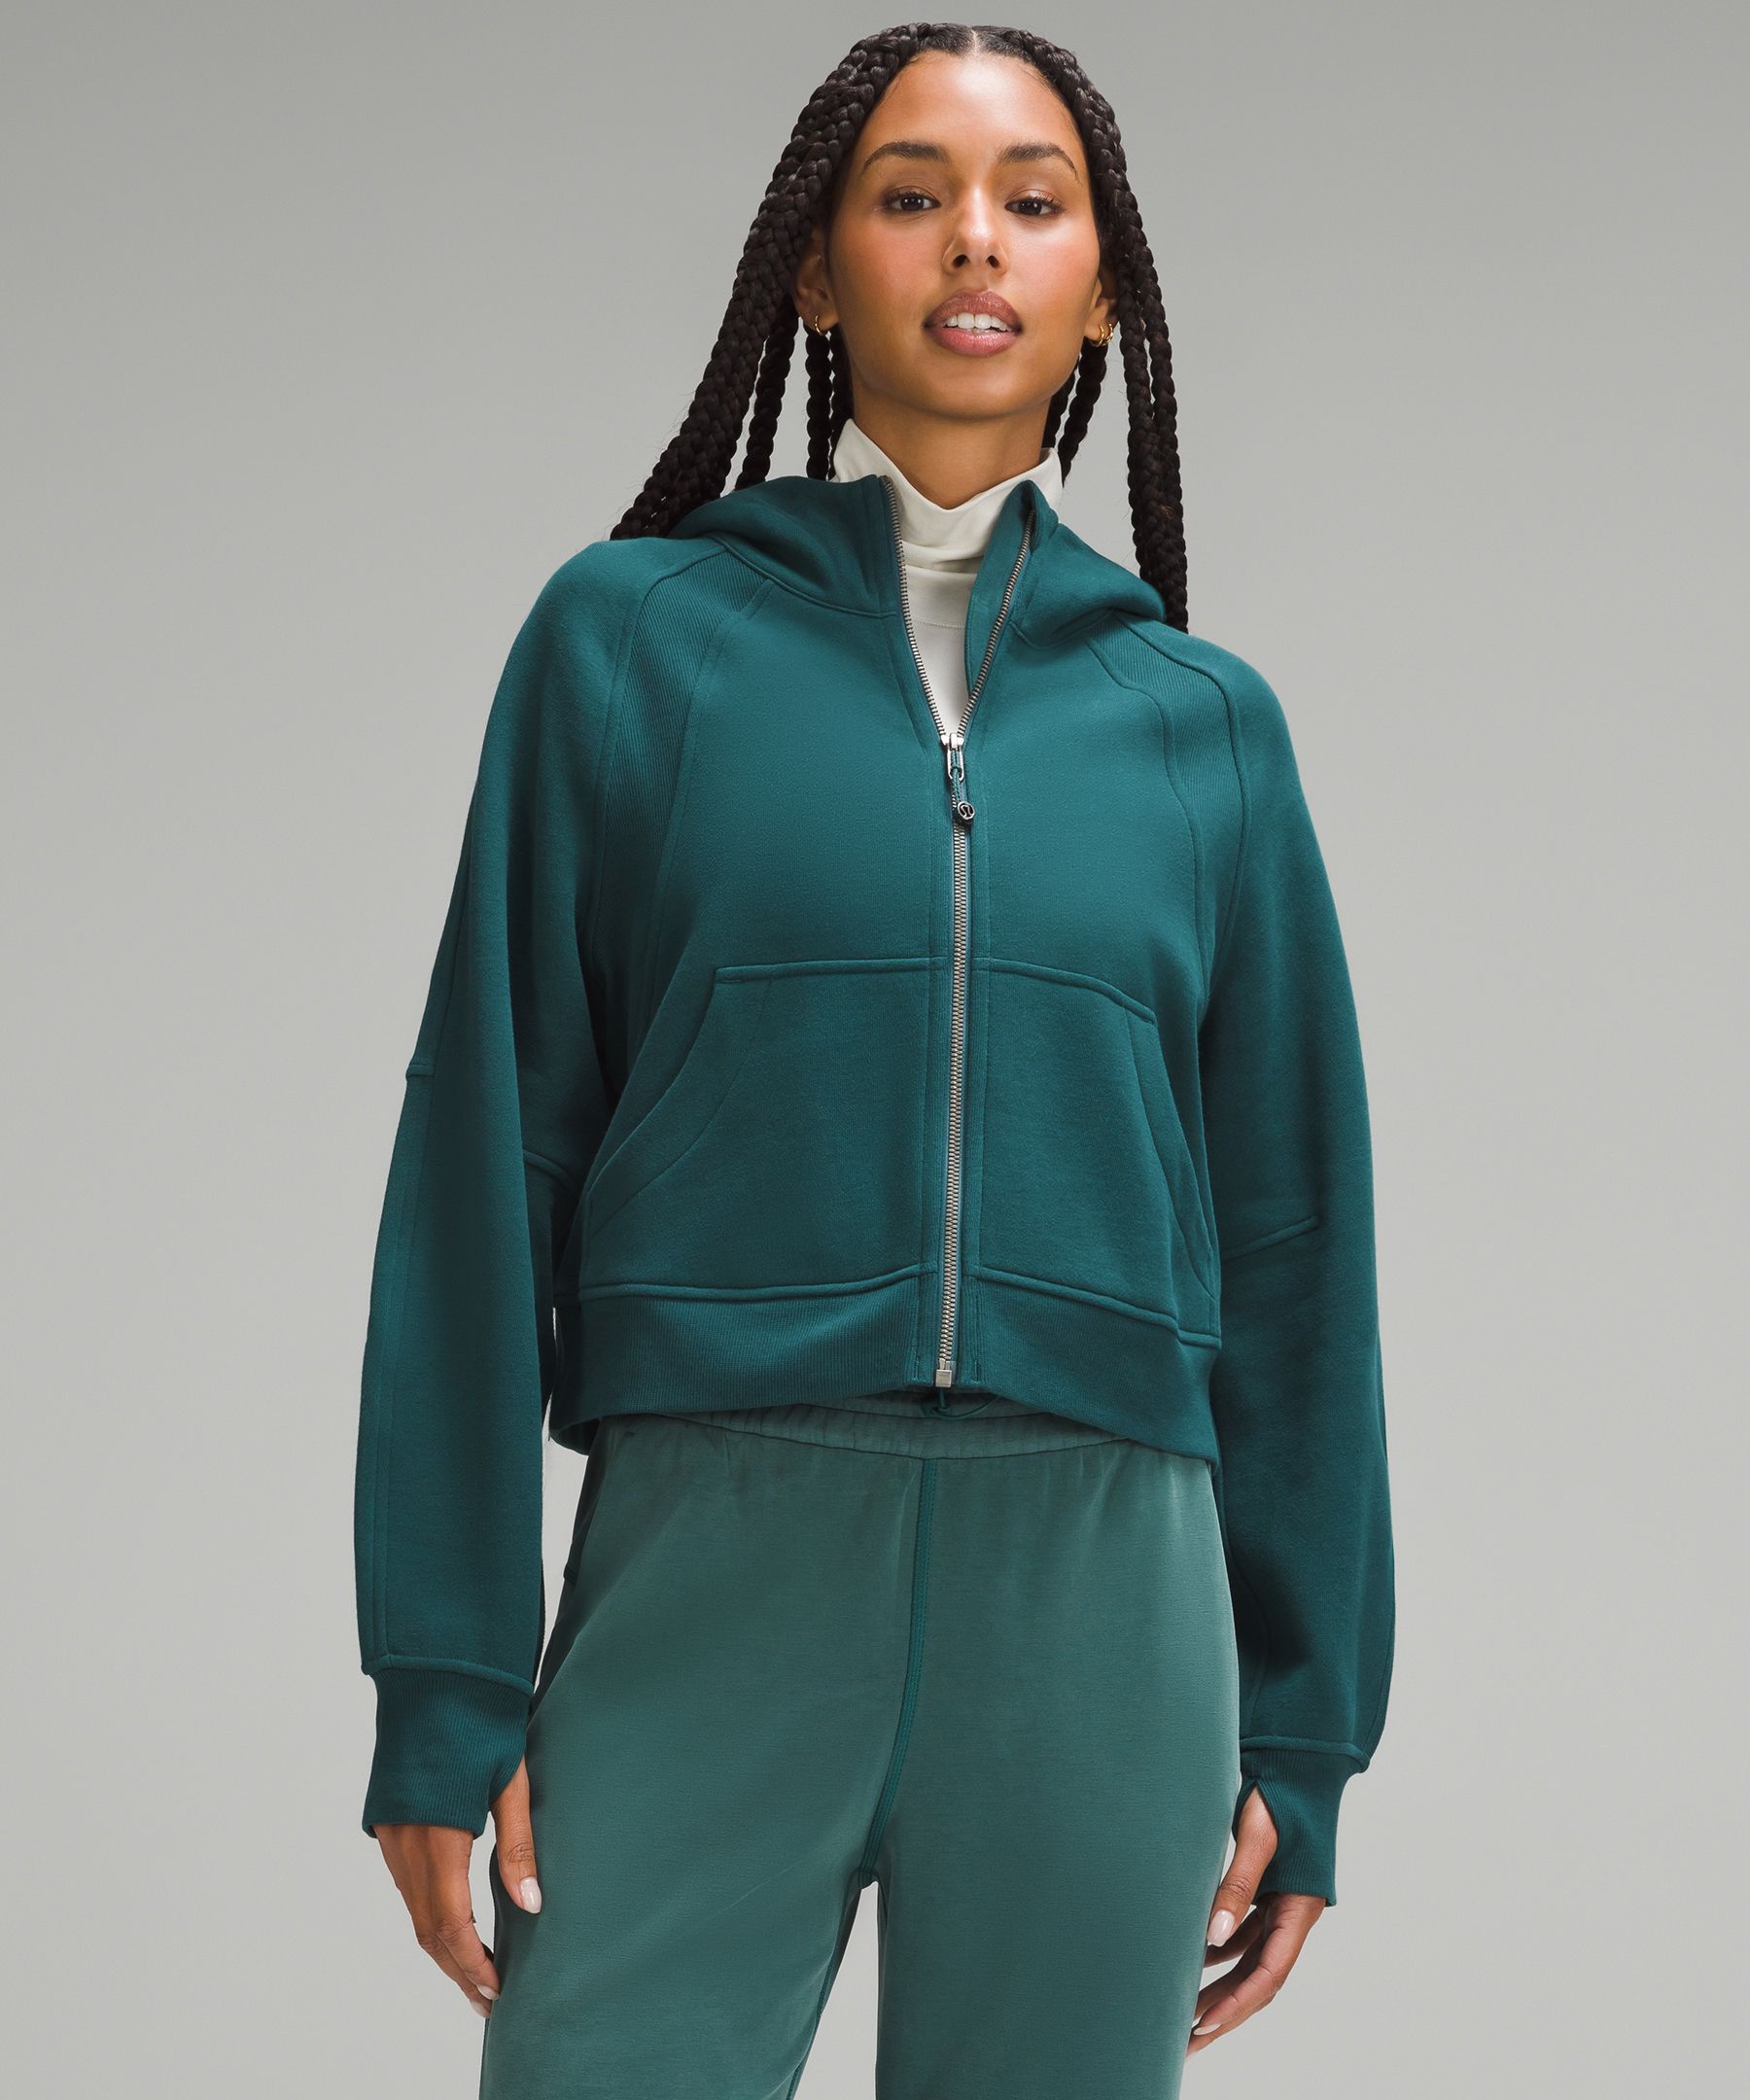 Scuba Oversized Full-Zip Hoodie | Women's Hoodies & Sweatshirts 